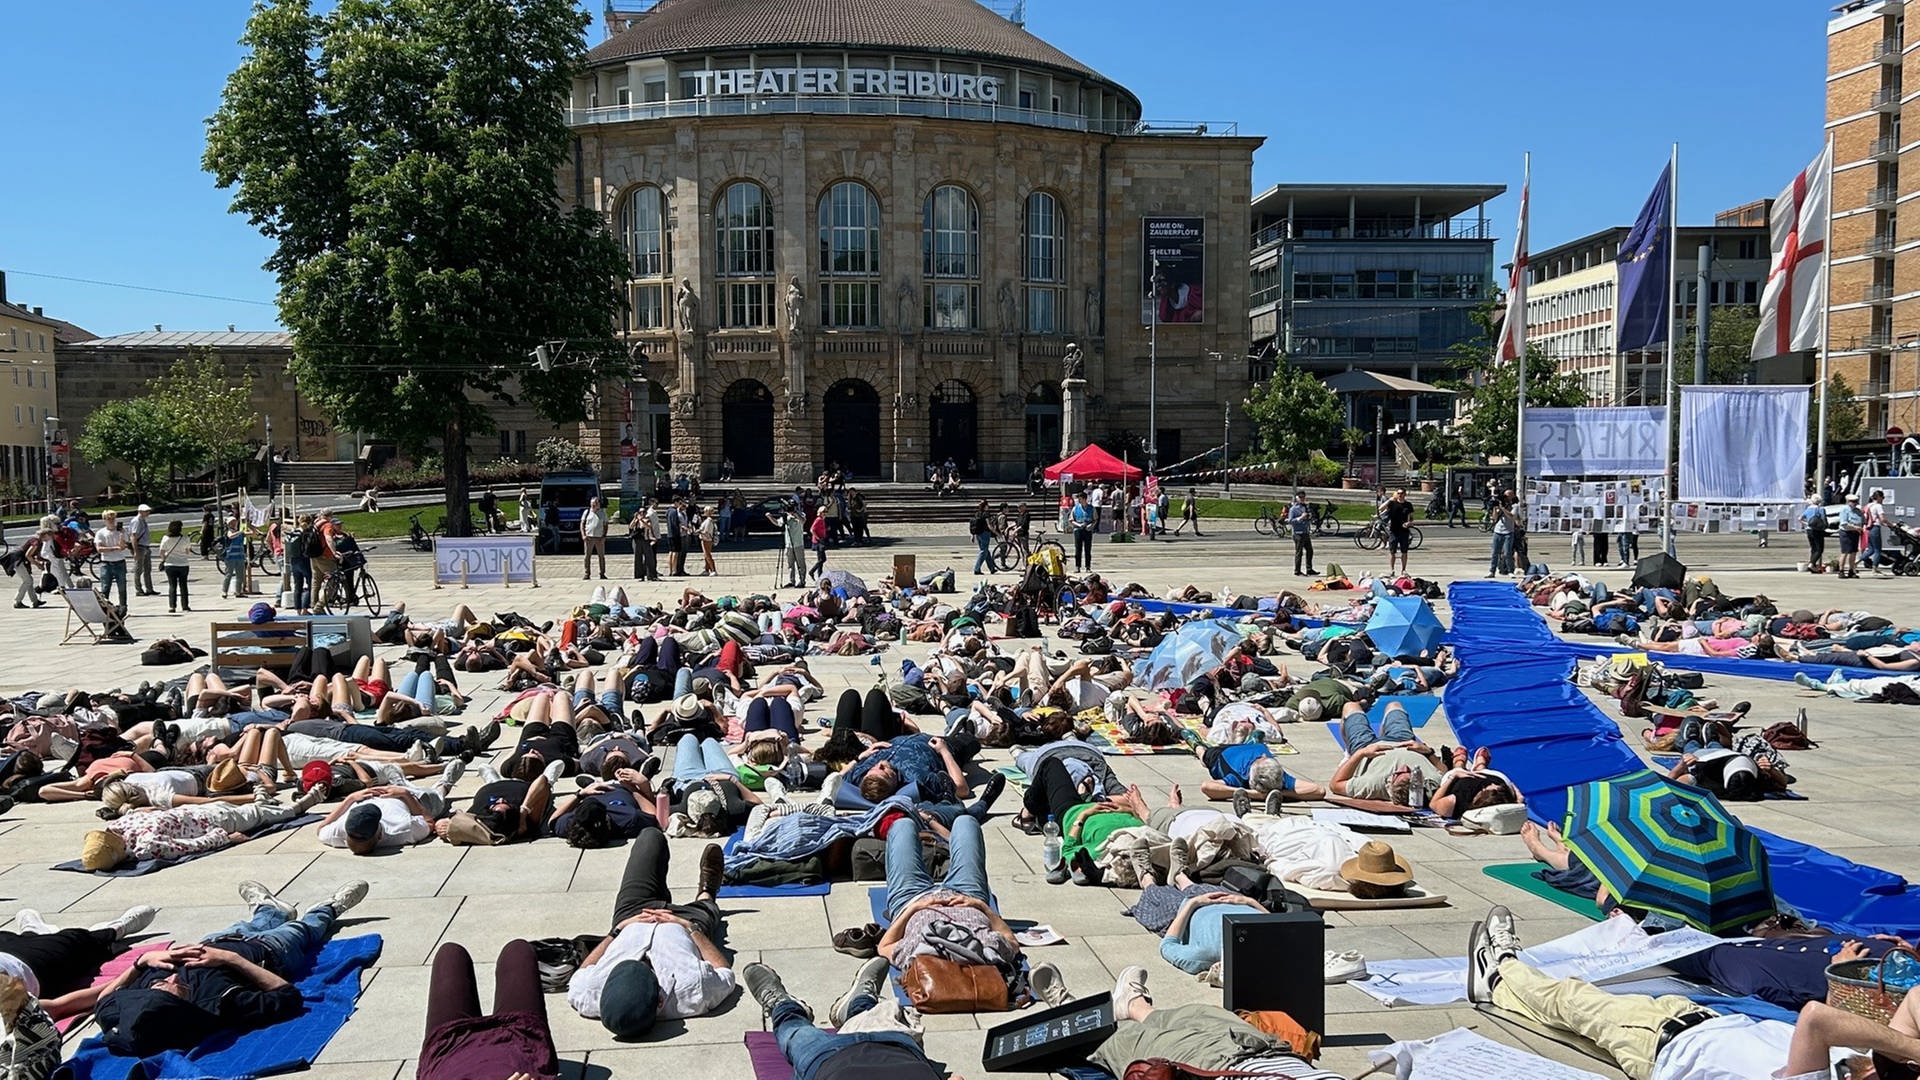 Dauernd erschöpft wegen ME/CFS: Liegend-Demo in Freiburg für mehr Hilfen